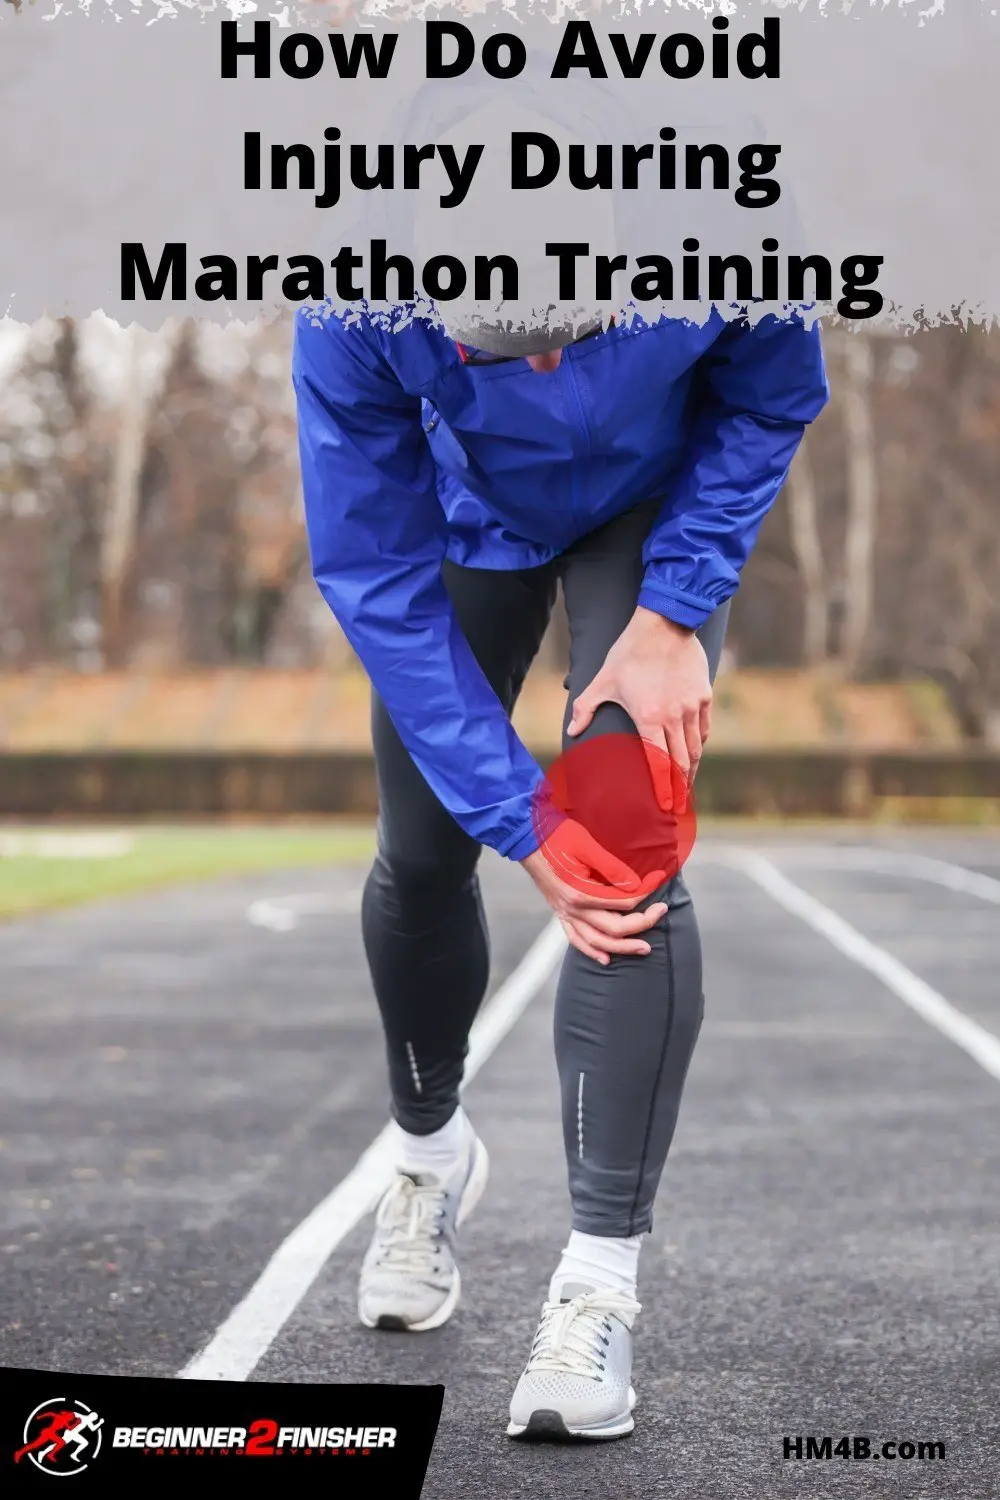 How Do I Not Injure Myself During Marathon Training?